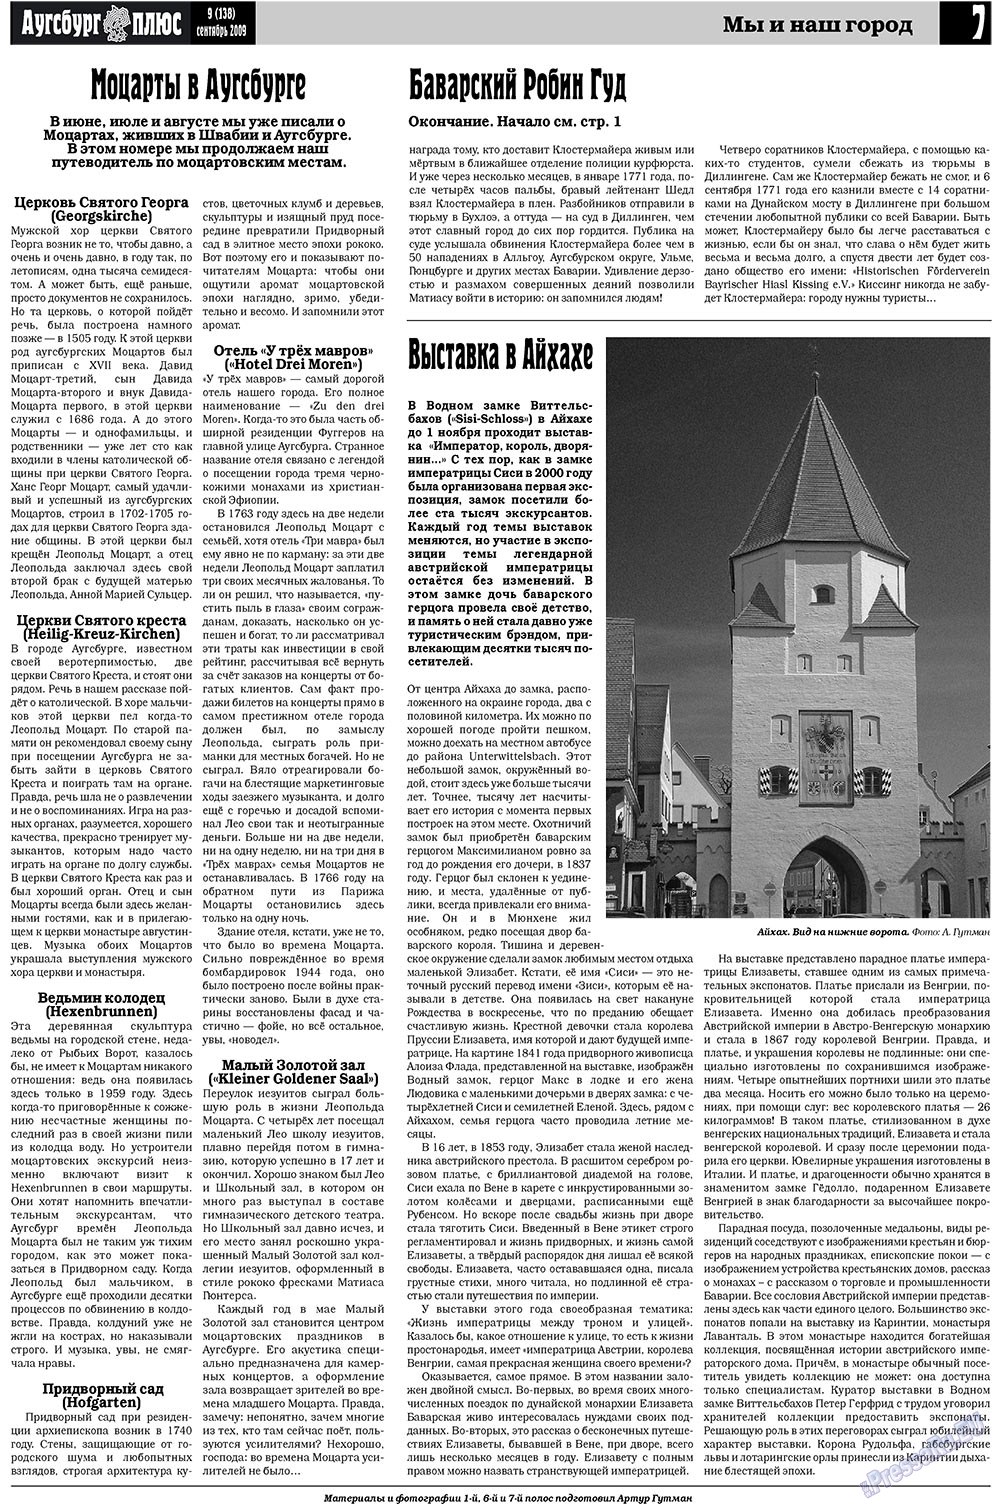 Германия плюс, газета. 2009 №9 стр.9